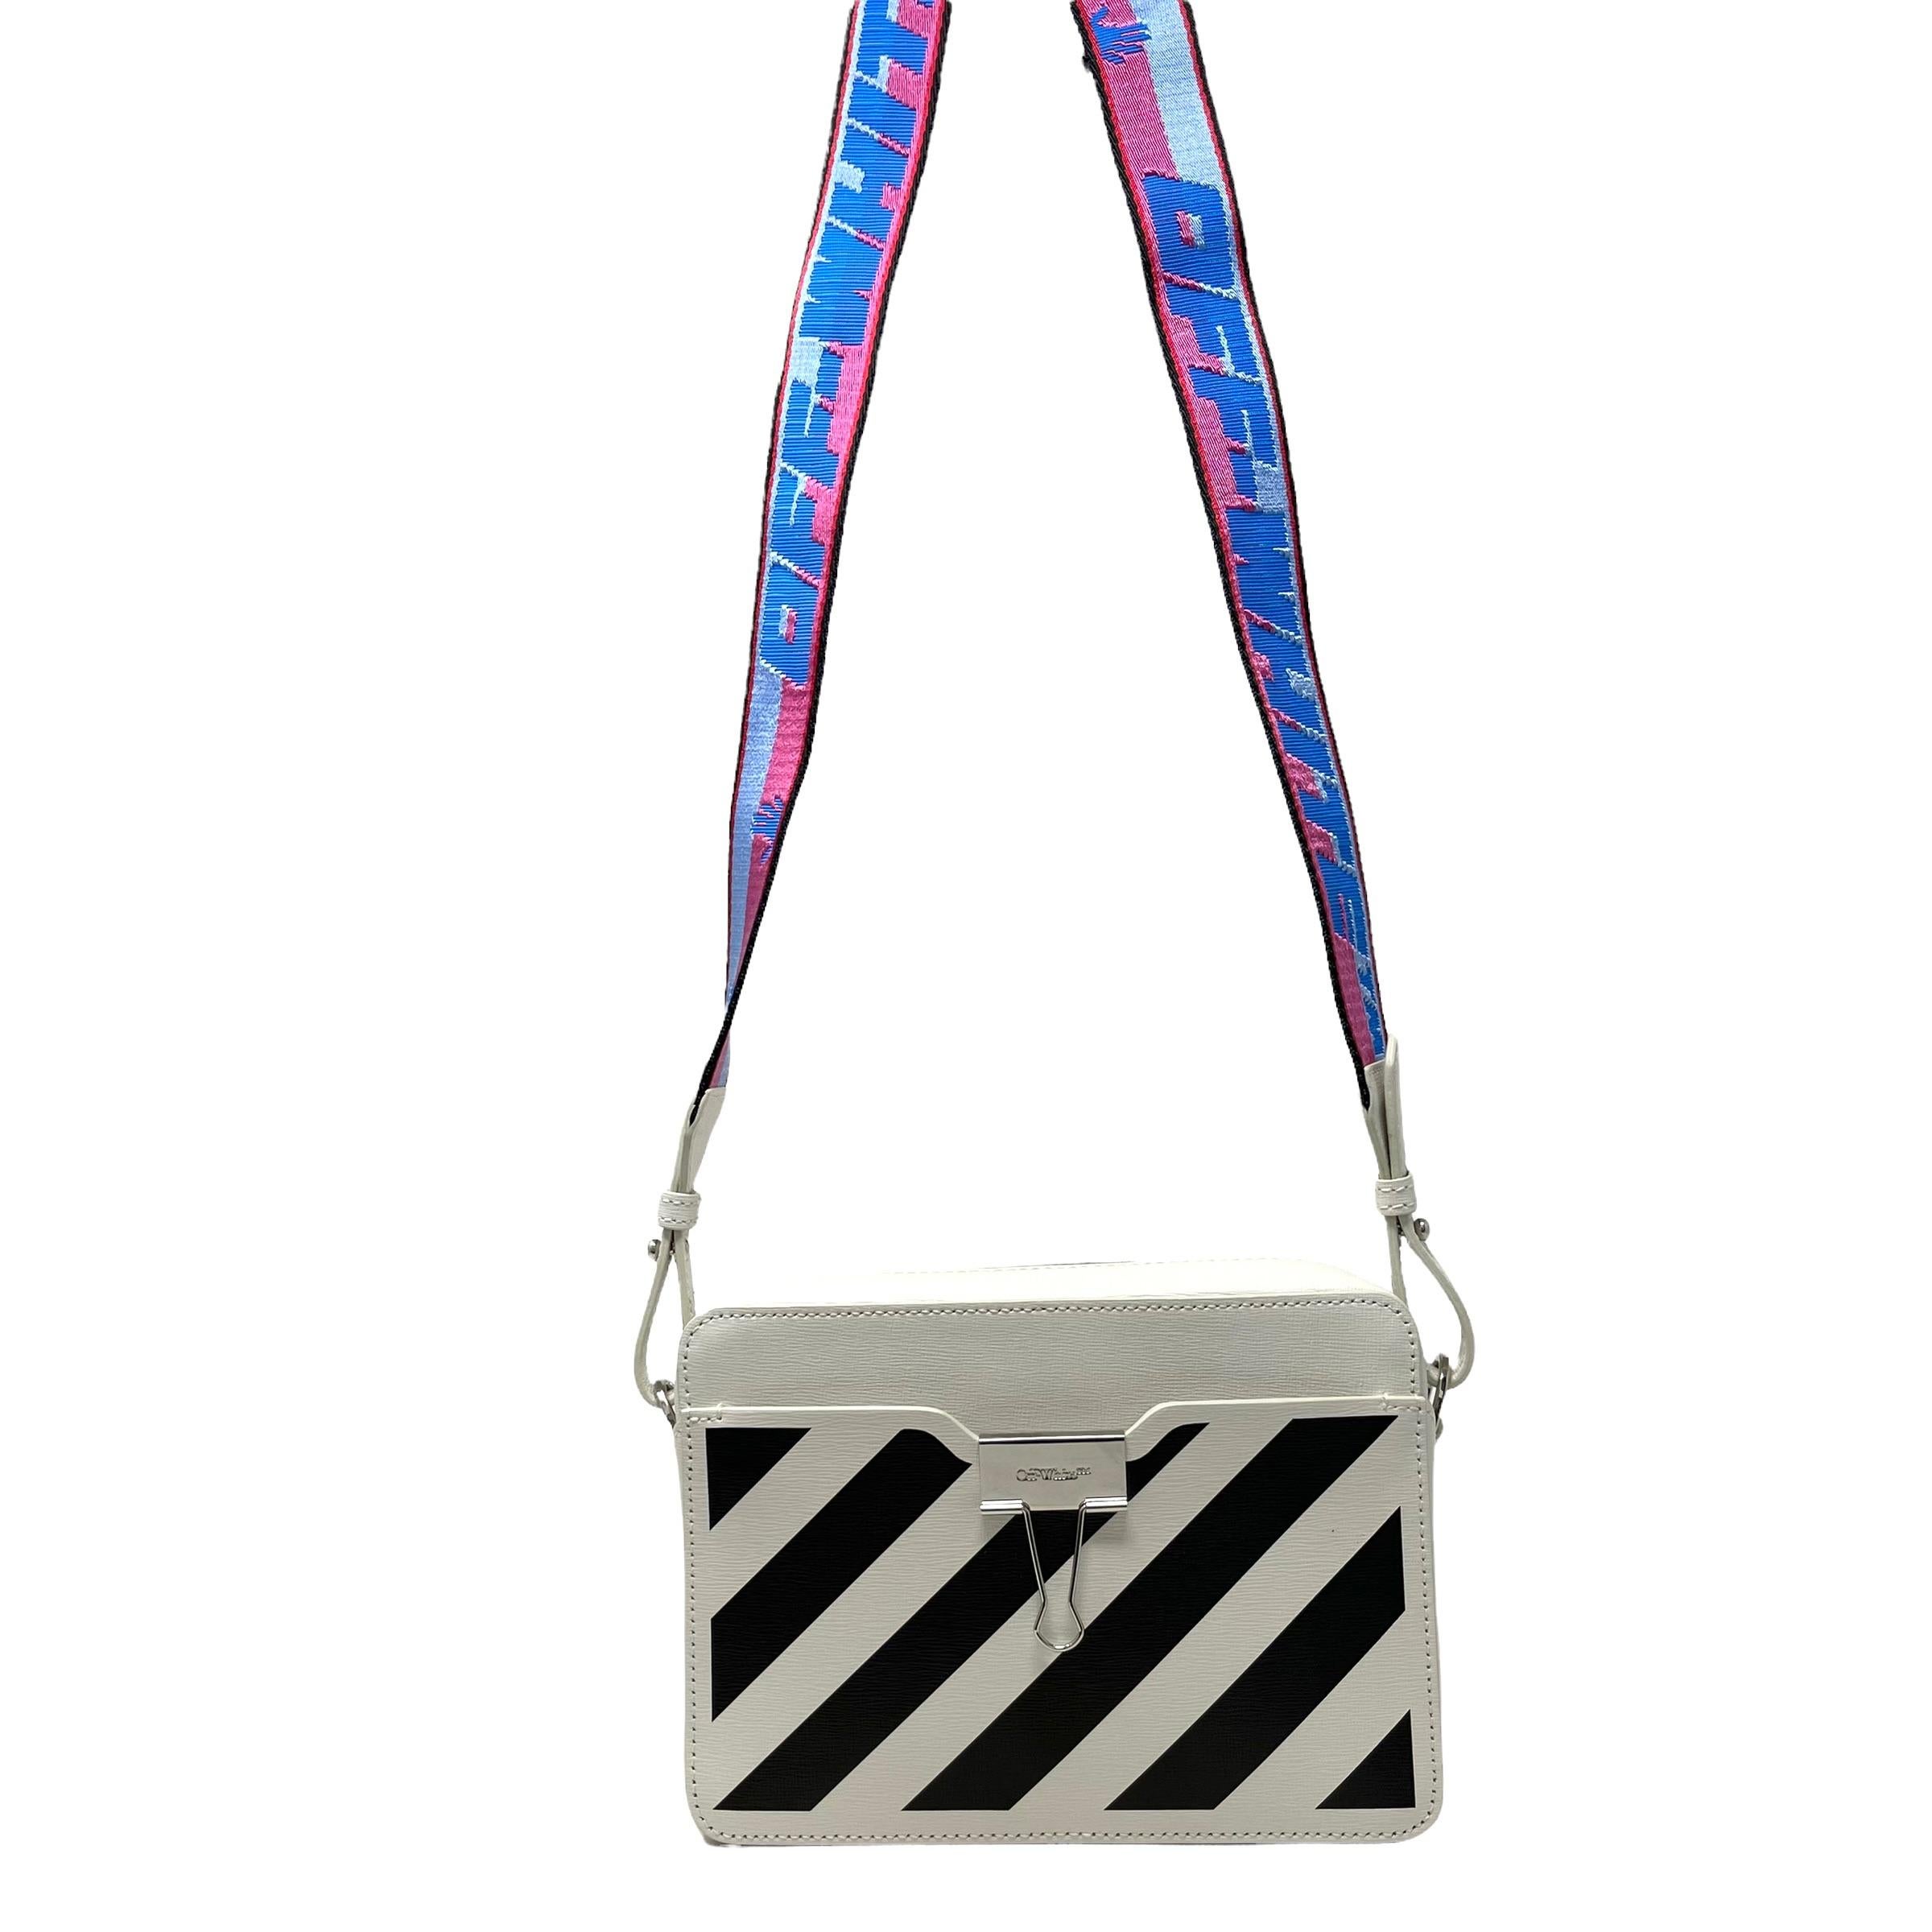 NEW Off-White Virgil Abloh White Diagonal Stripes Binder Leather Shoulder Bag For Sale 1